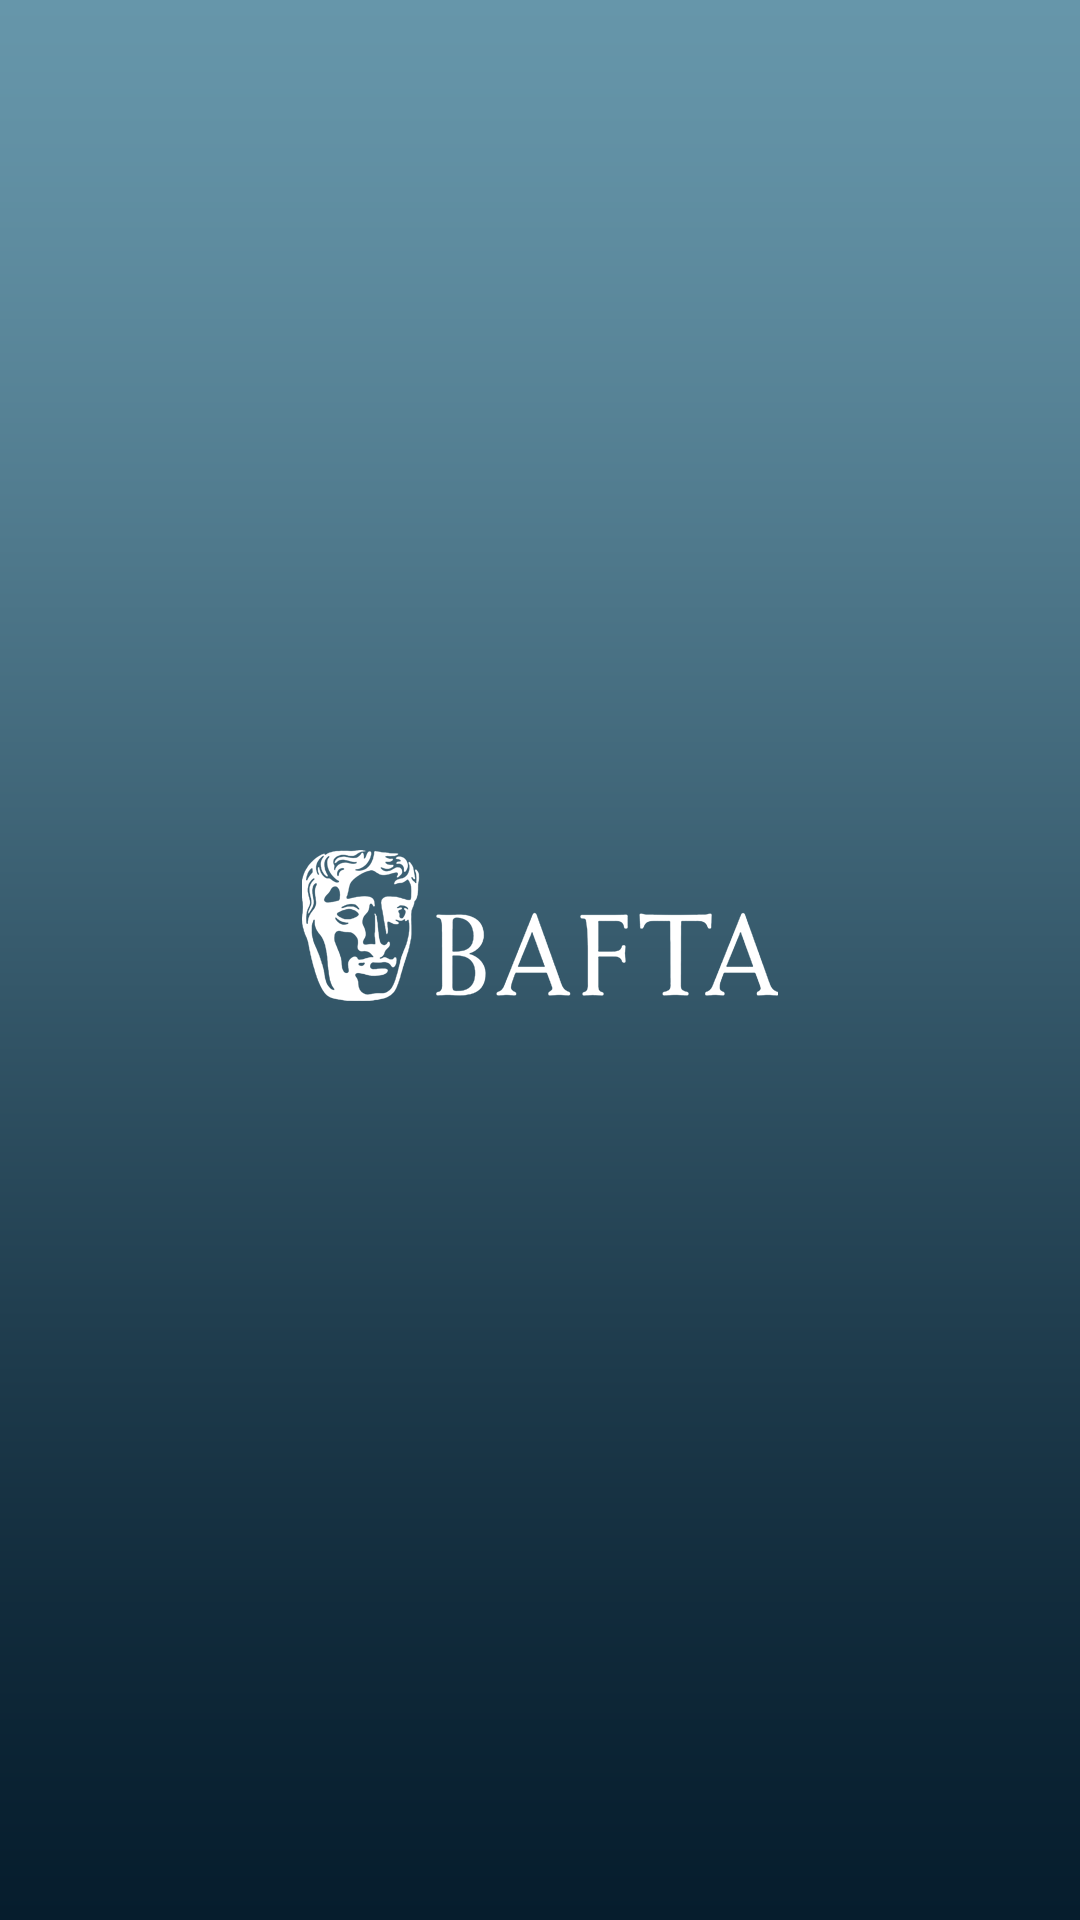 BAFTA.png